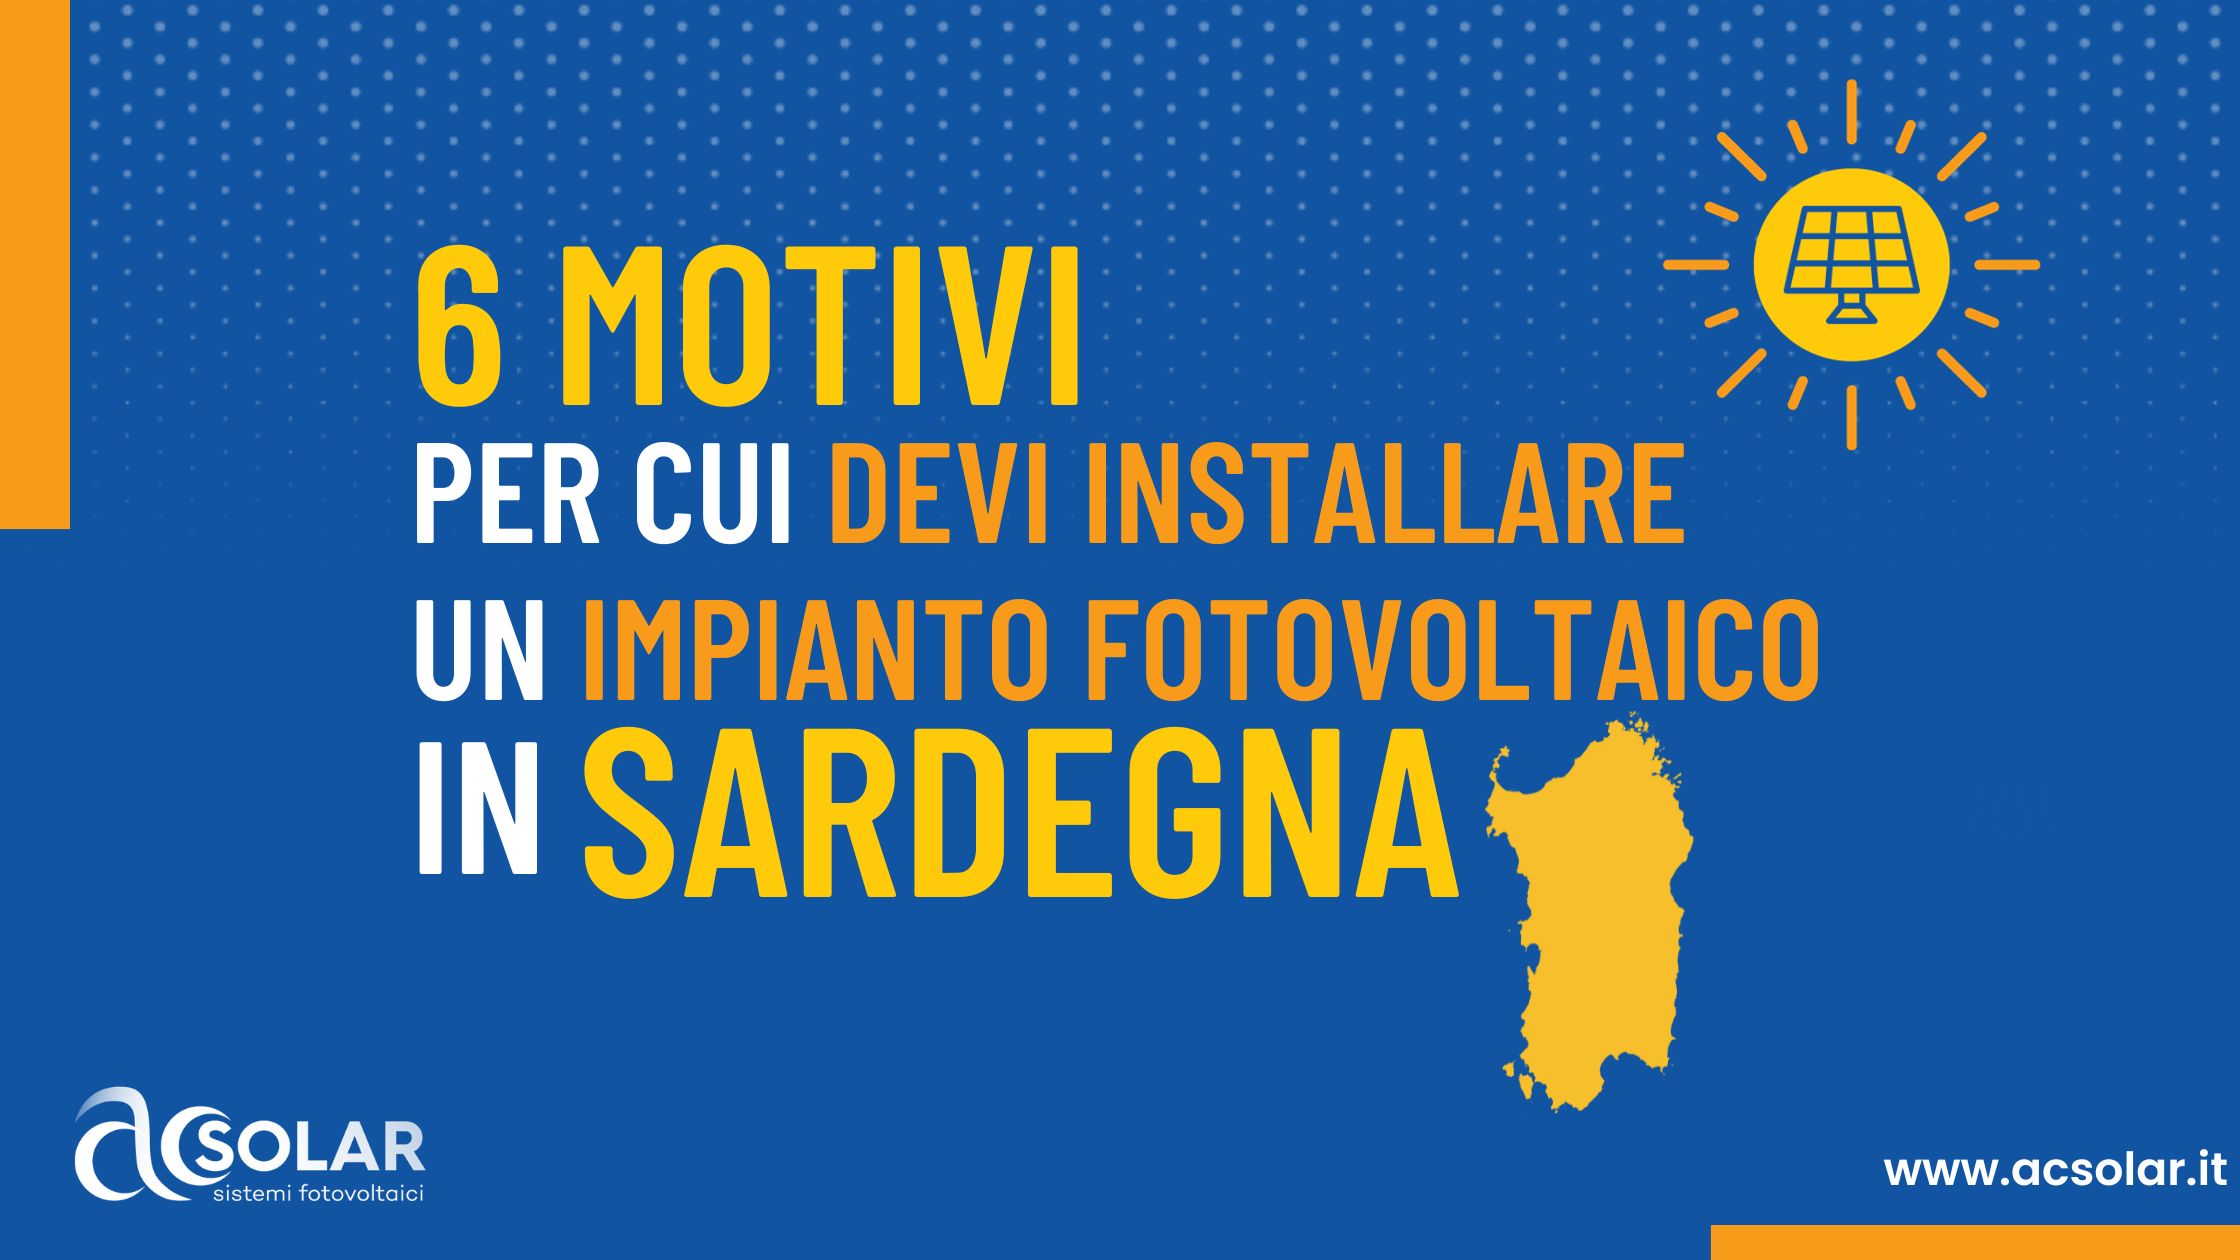 6 motivi per cui DEVI installare un impianto fotovoltaico in Sardegna